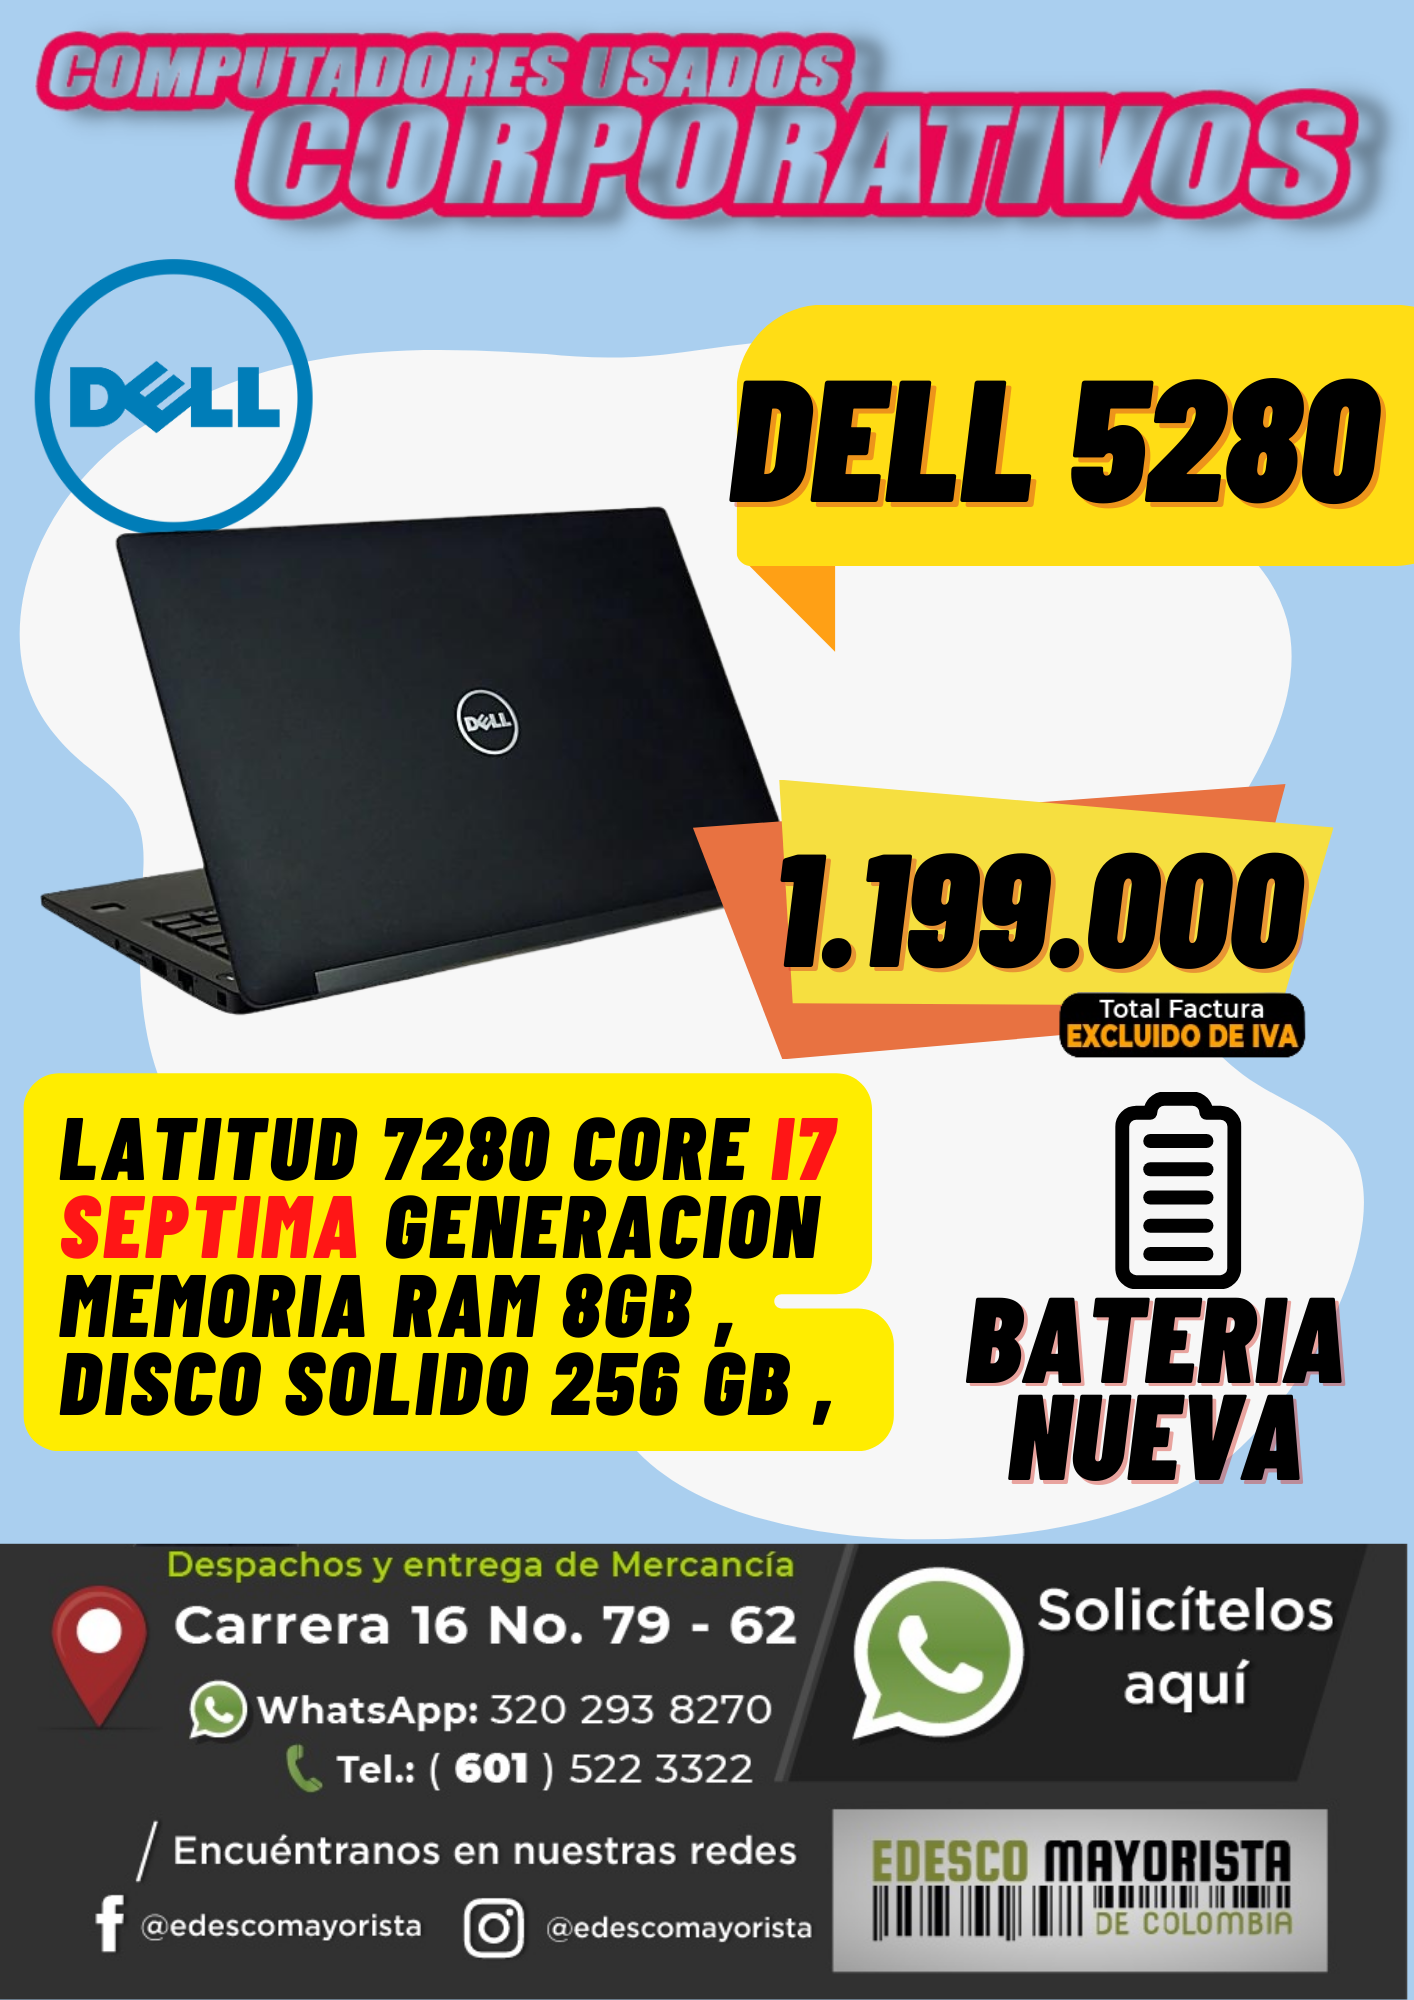 Dell 5280 Batería Nueva